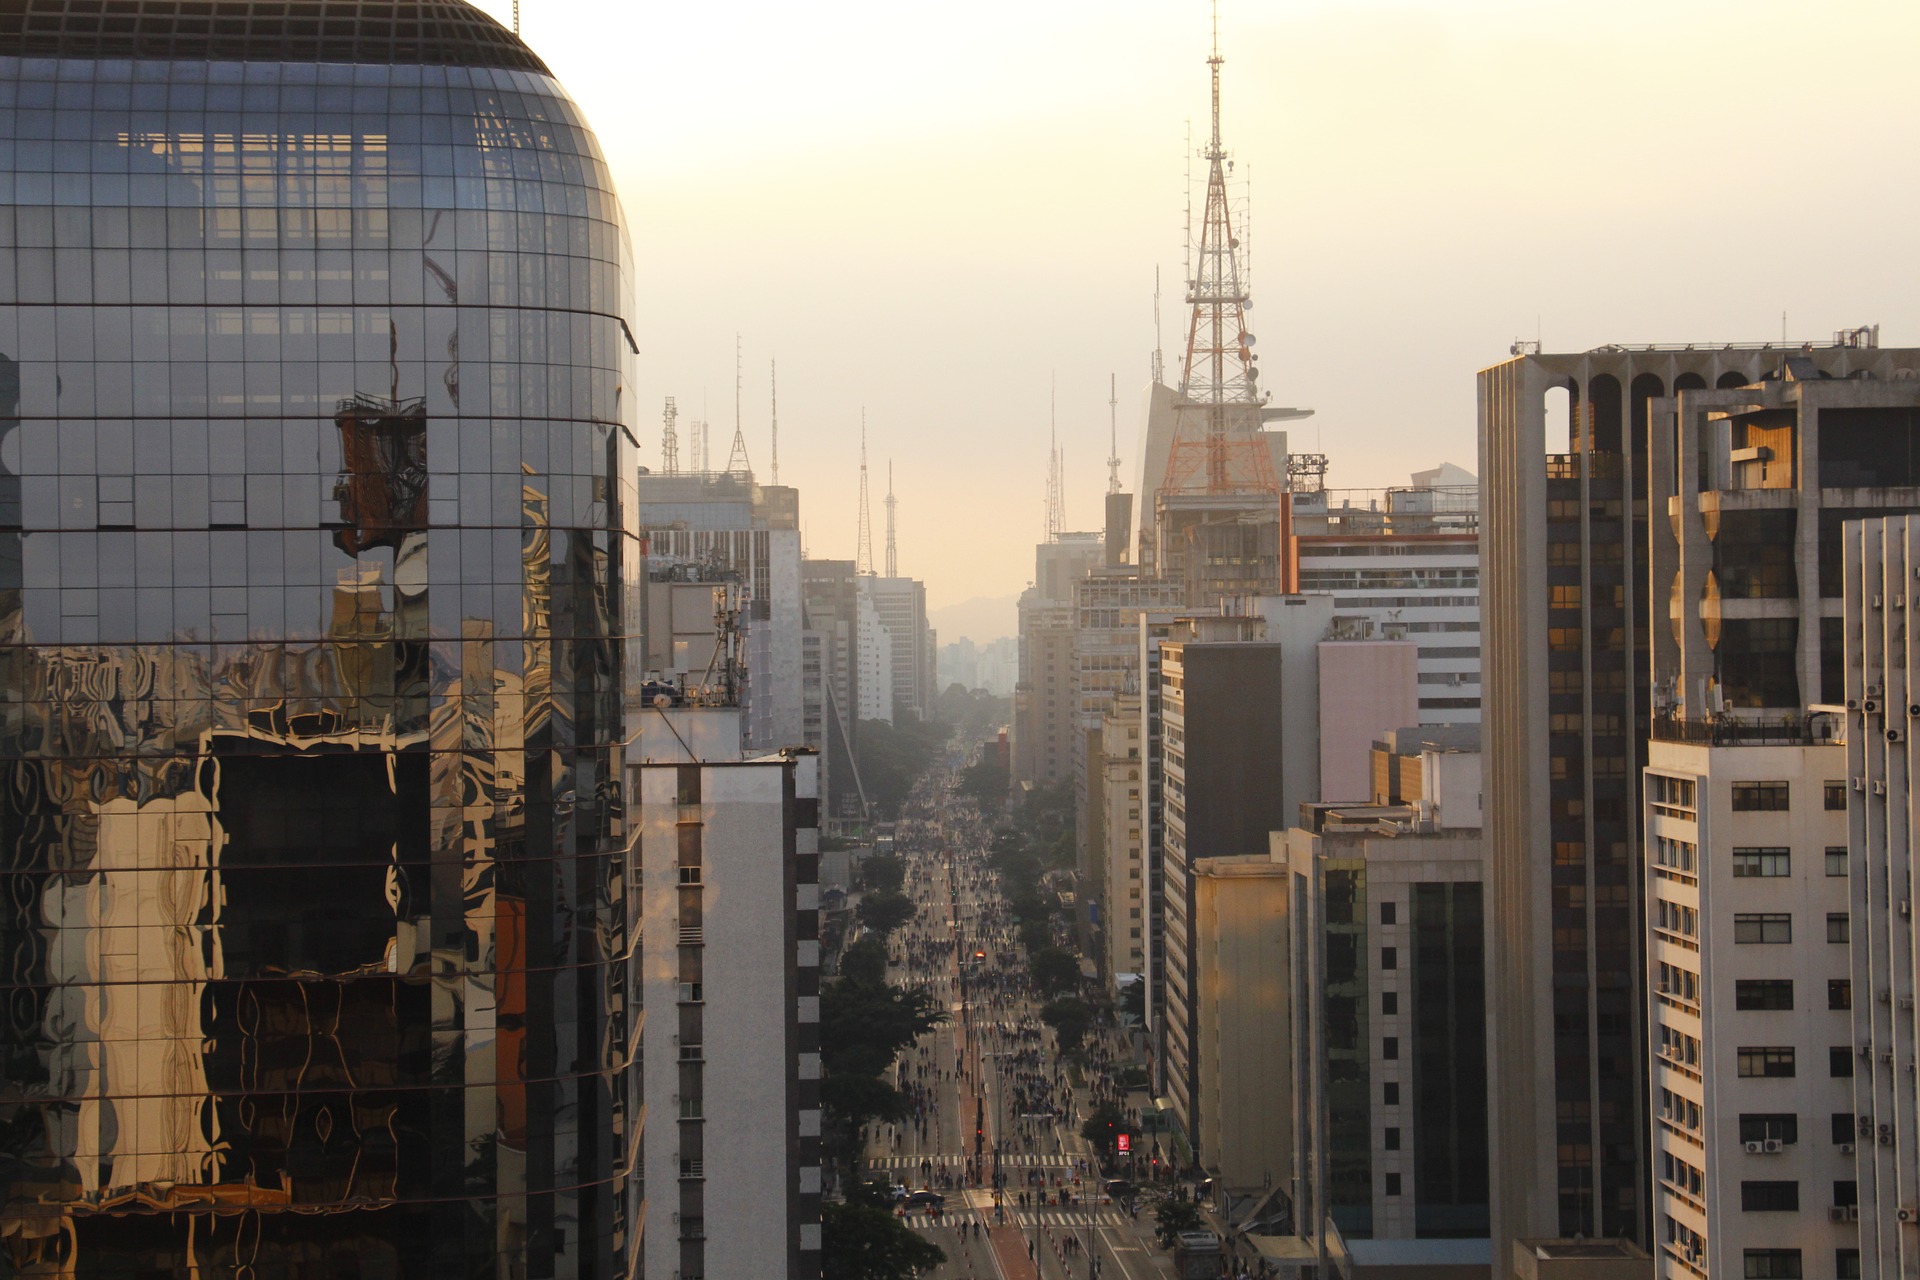 Avenida Paulista - As opções de lazer são muitas e diversificadas